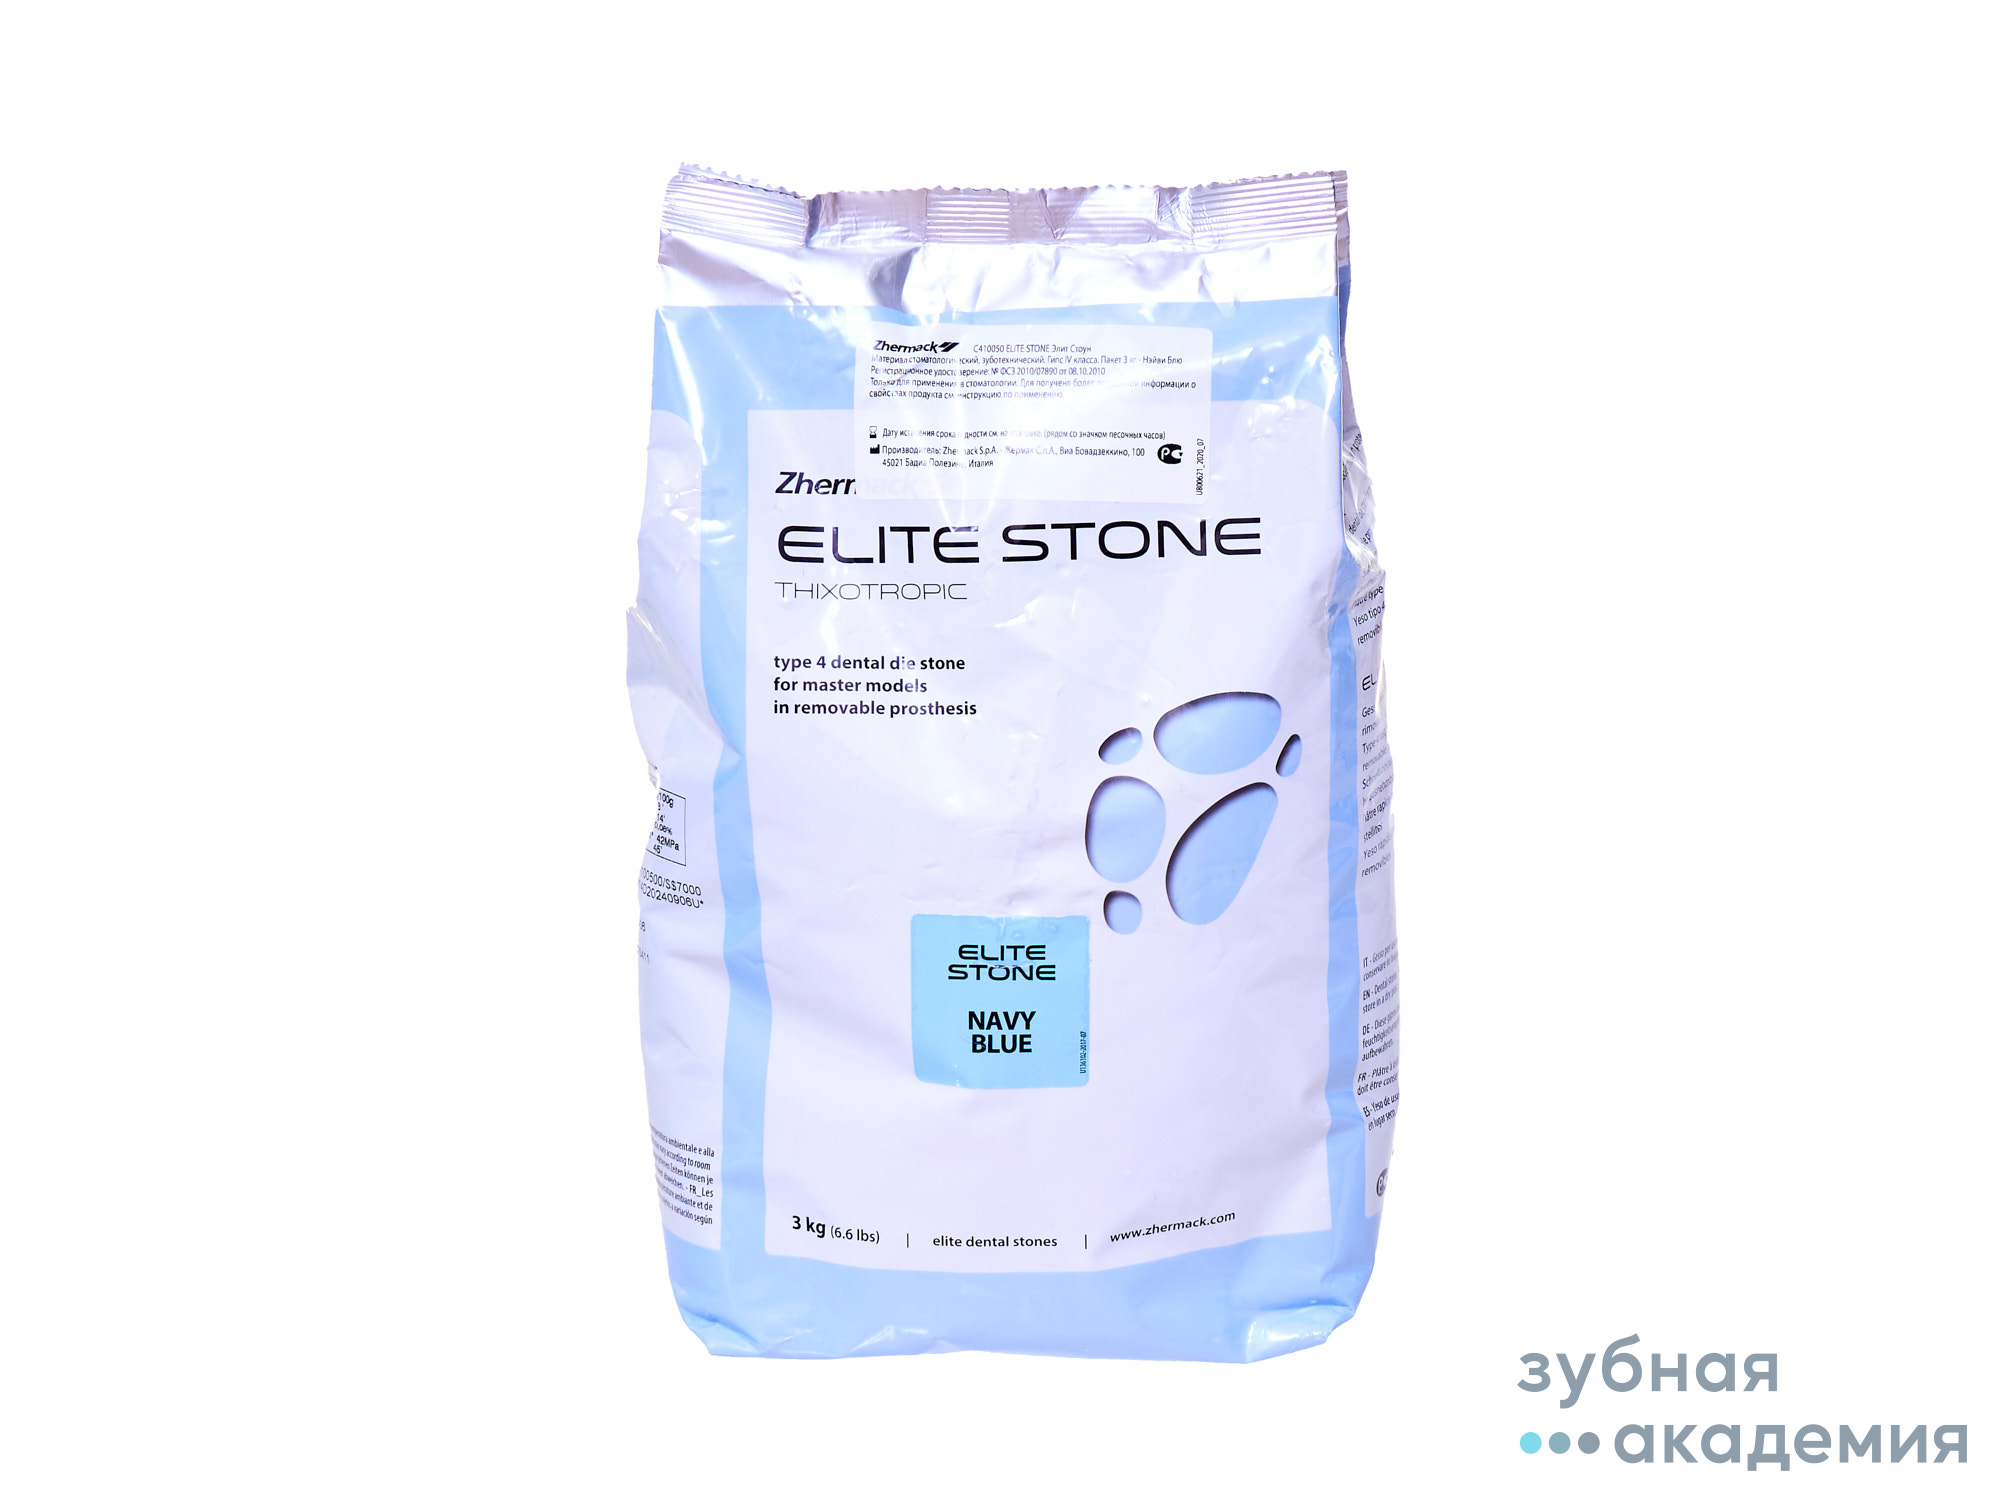 Elite Stone/Элит Стоун - супергипс класс IV (3 кг), (розовый) Zhermack/ Италия